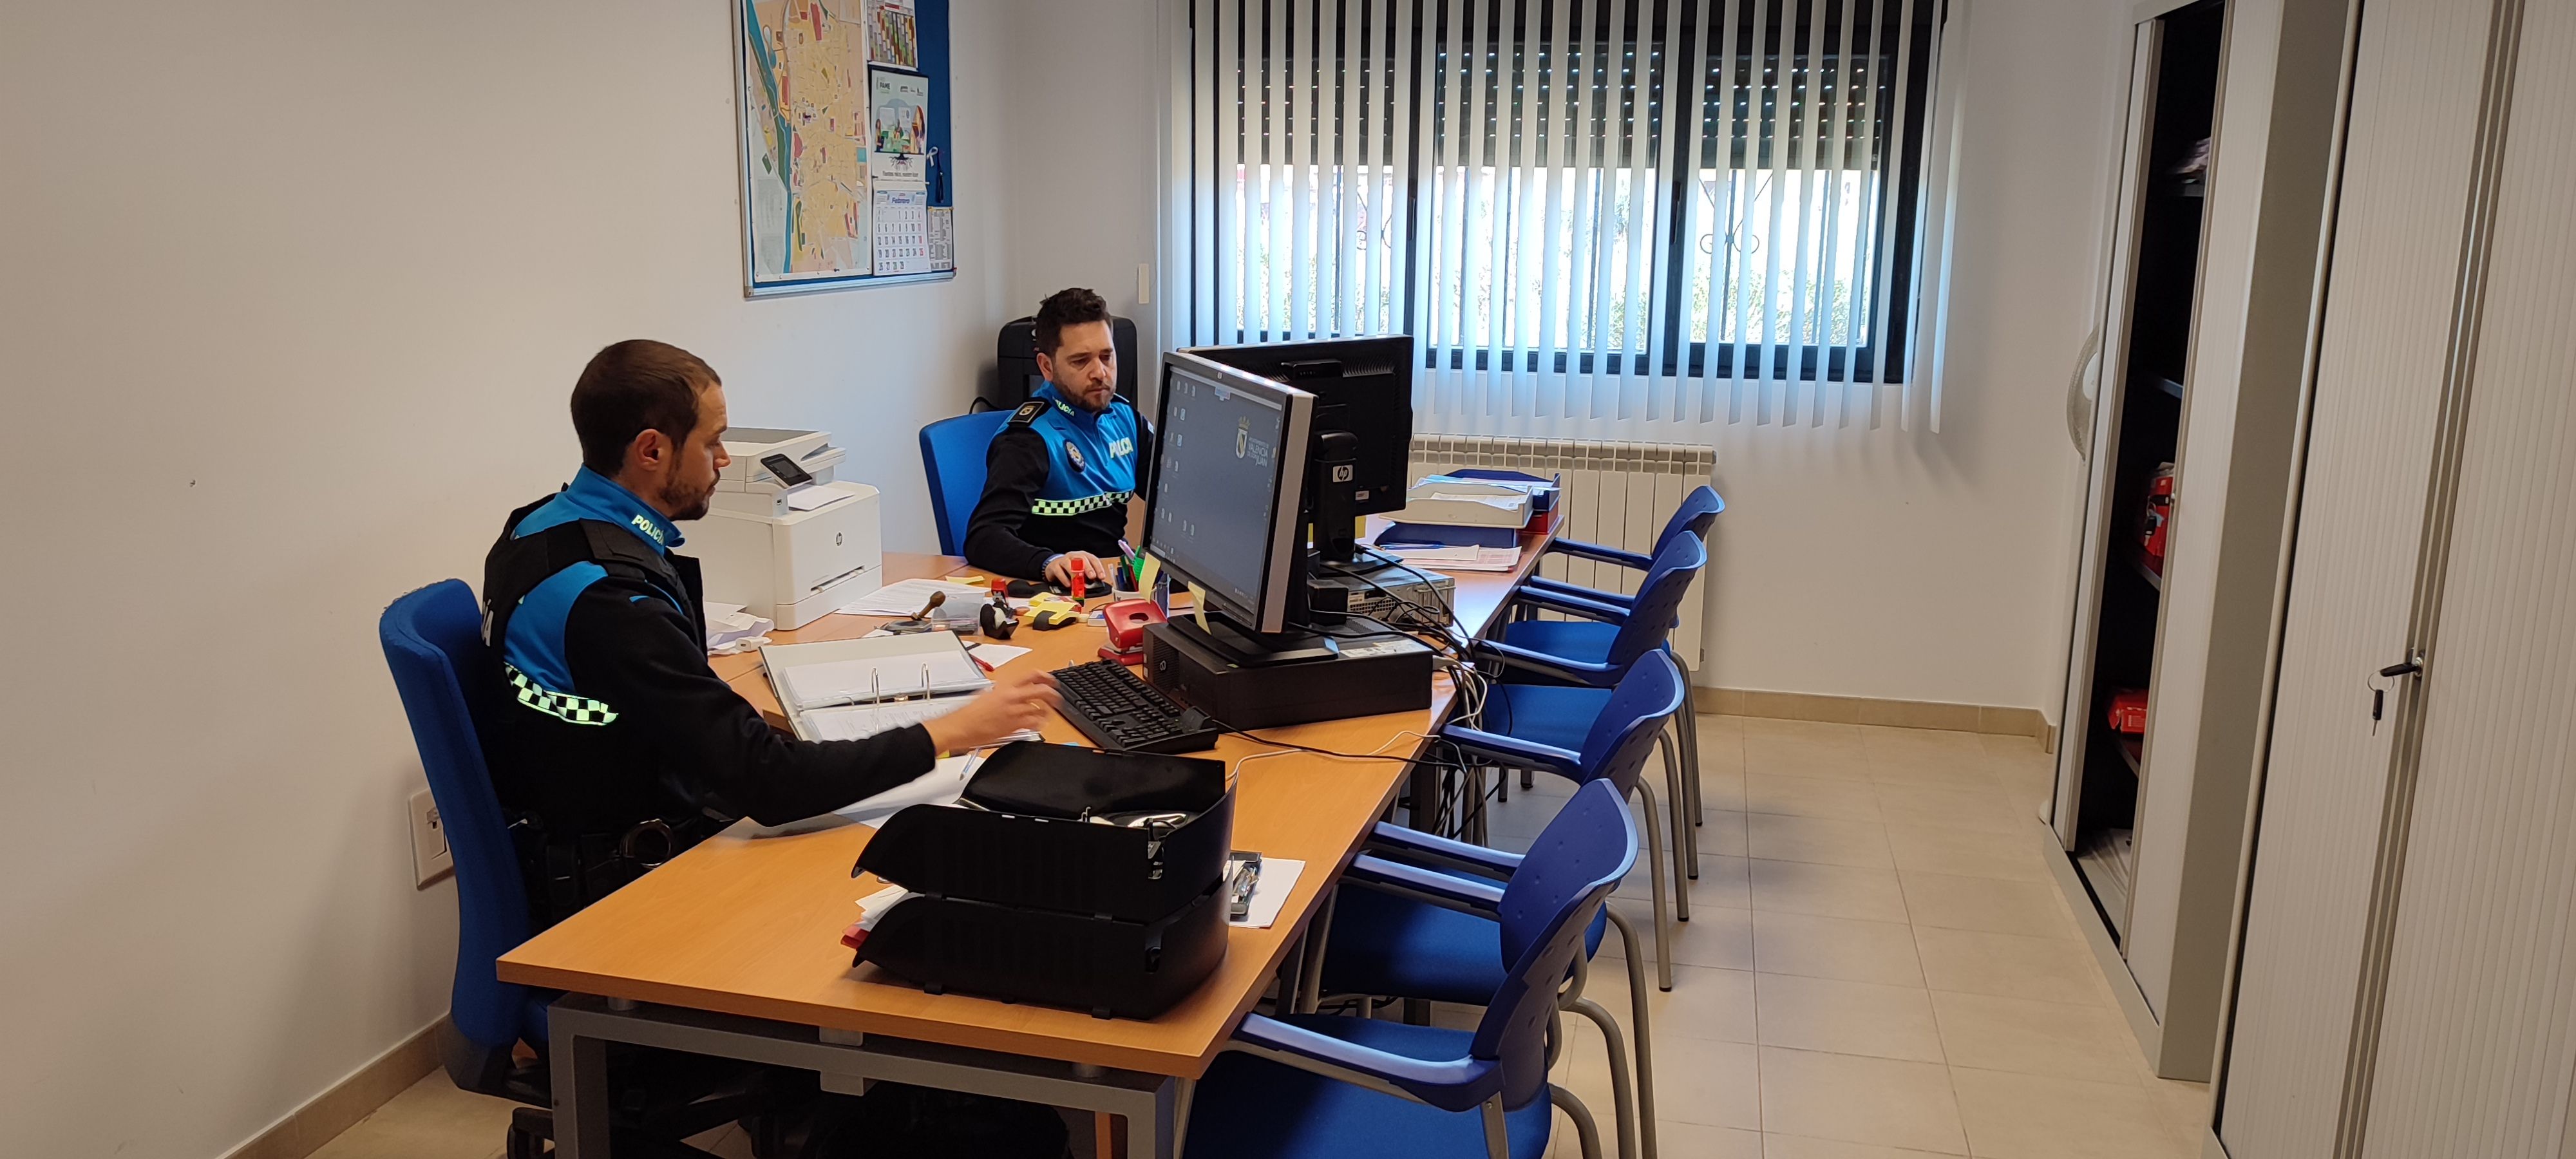 Agentes de la Policía Local de Valencia de Don Juan trabajando en la nueva sede. | L.N.C.